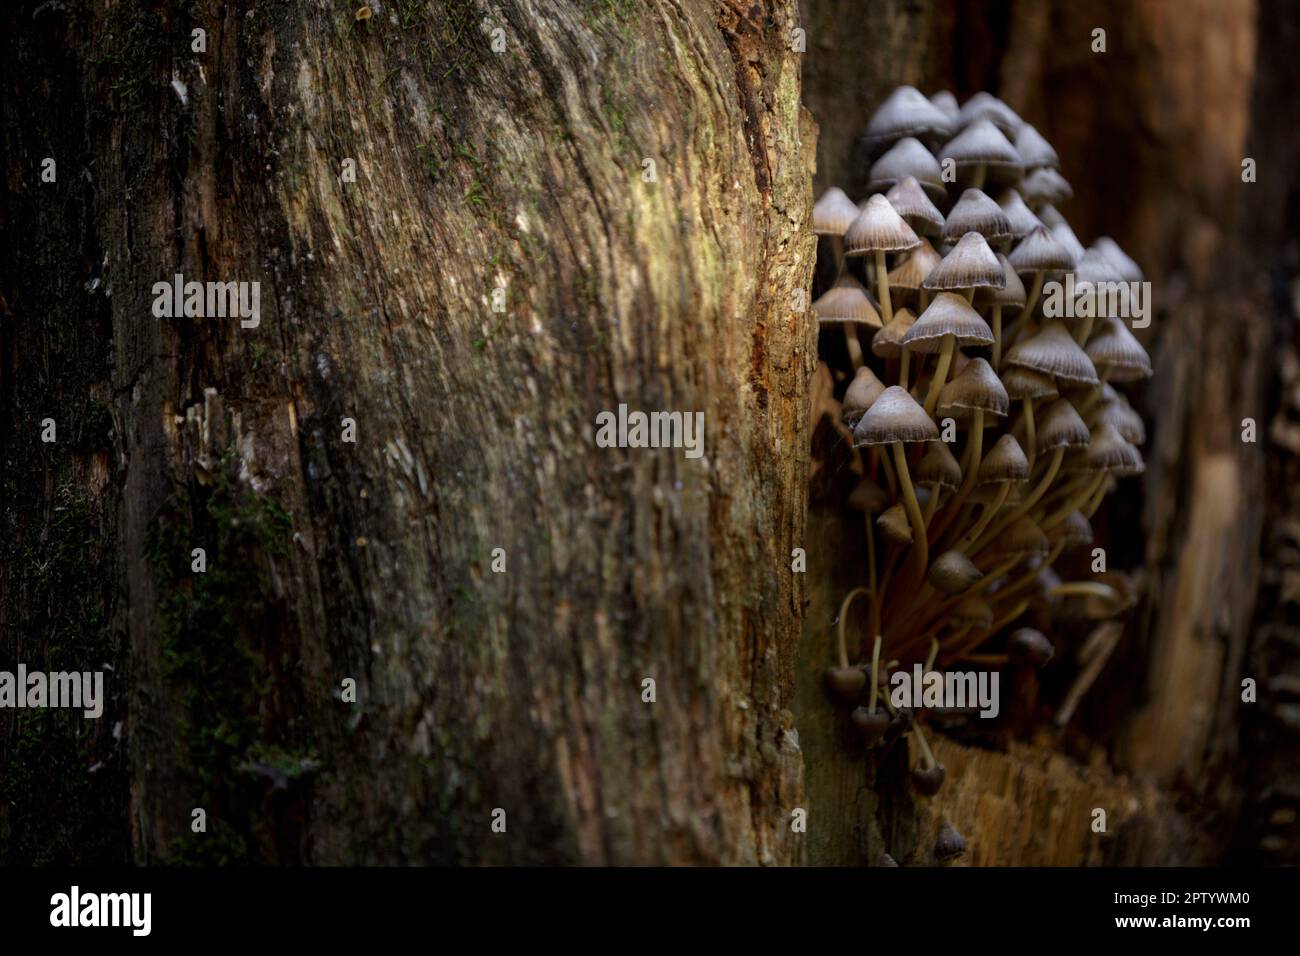 Toadstool, fungo velenoso. Funghi di foresta su un tronco di albero marciume con muschio. Un gruppo di funghi velenosi su ceppo marcio nella foresta Foto Stock